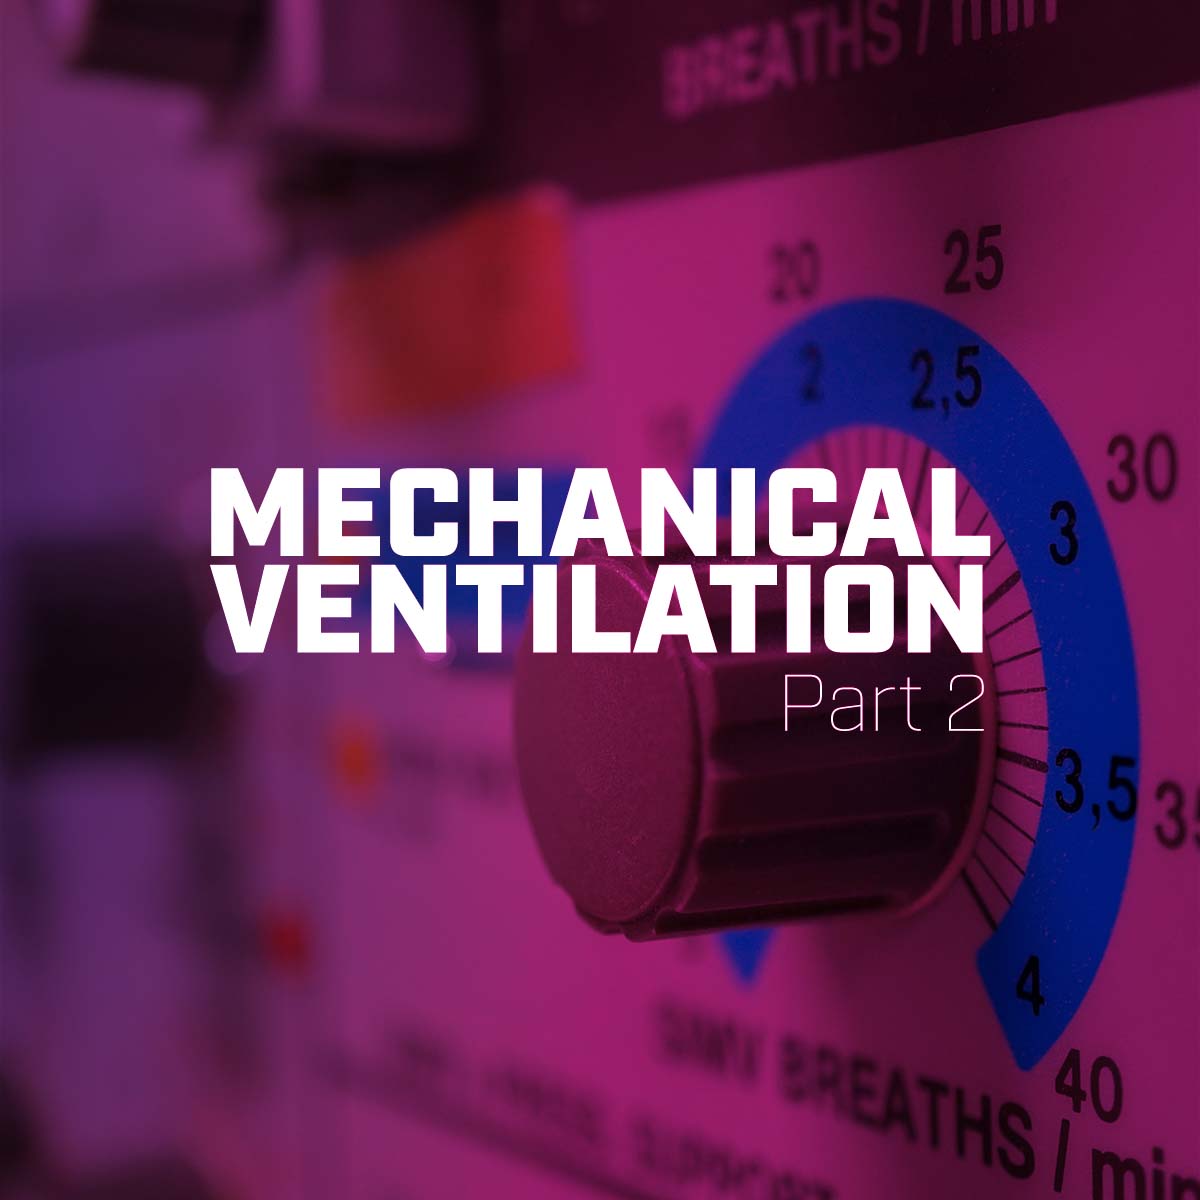 Mechanical Ventilation Part 2: Podcast Subscription